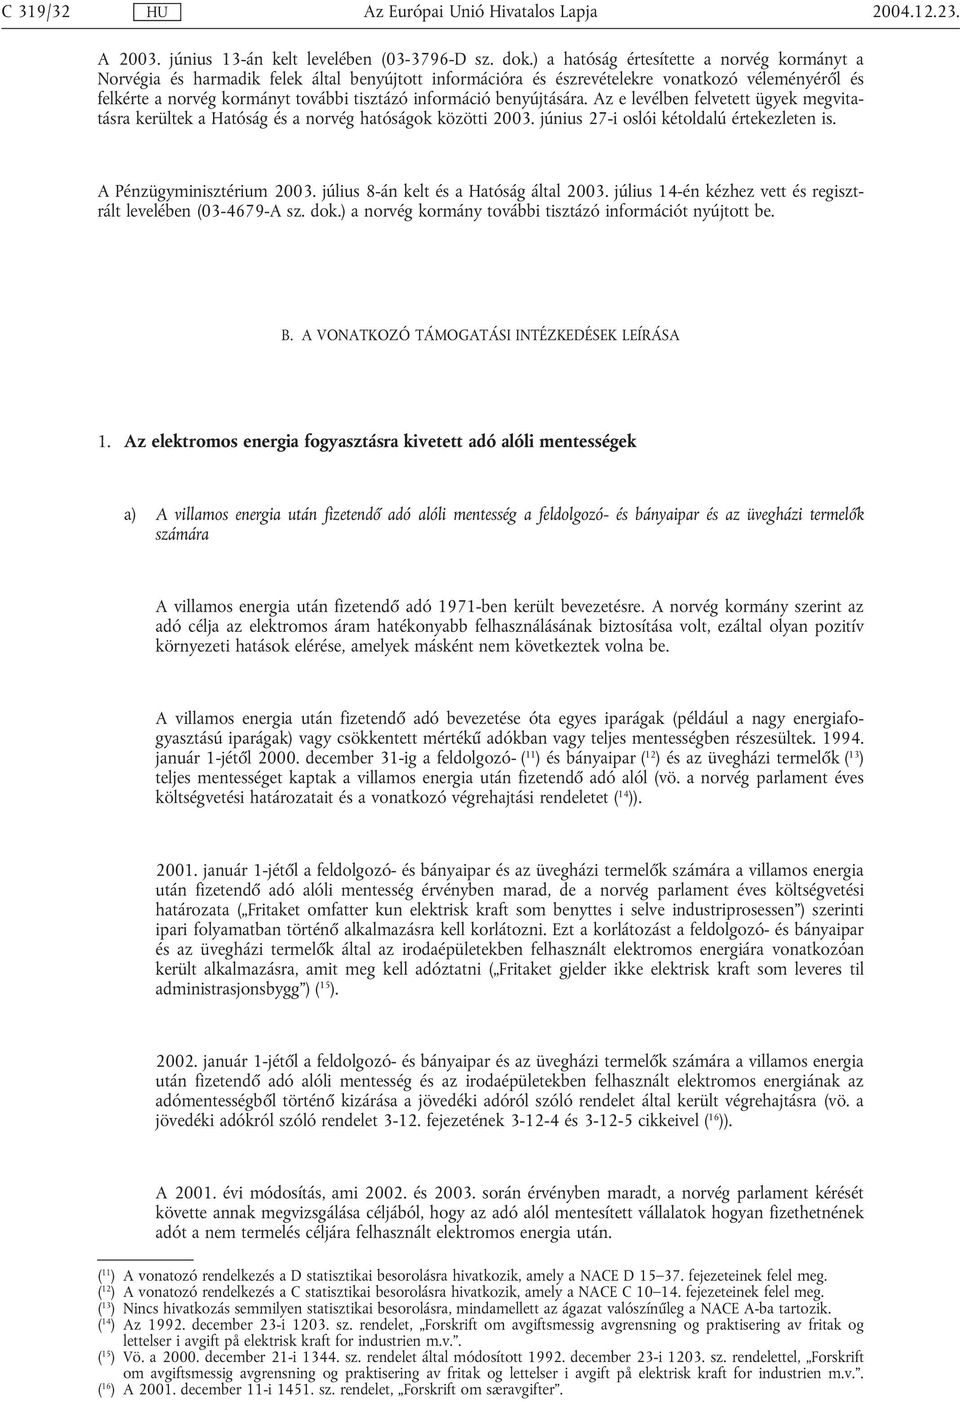 benyújtására. Az e levélben felvetett ügyek megvitatásra kerültek a Hatóság és a norvég hatóságok közötti 2003. június 27-i oslói kétoldalú értekezleten is. A Pénzügyminisztérium 2003.